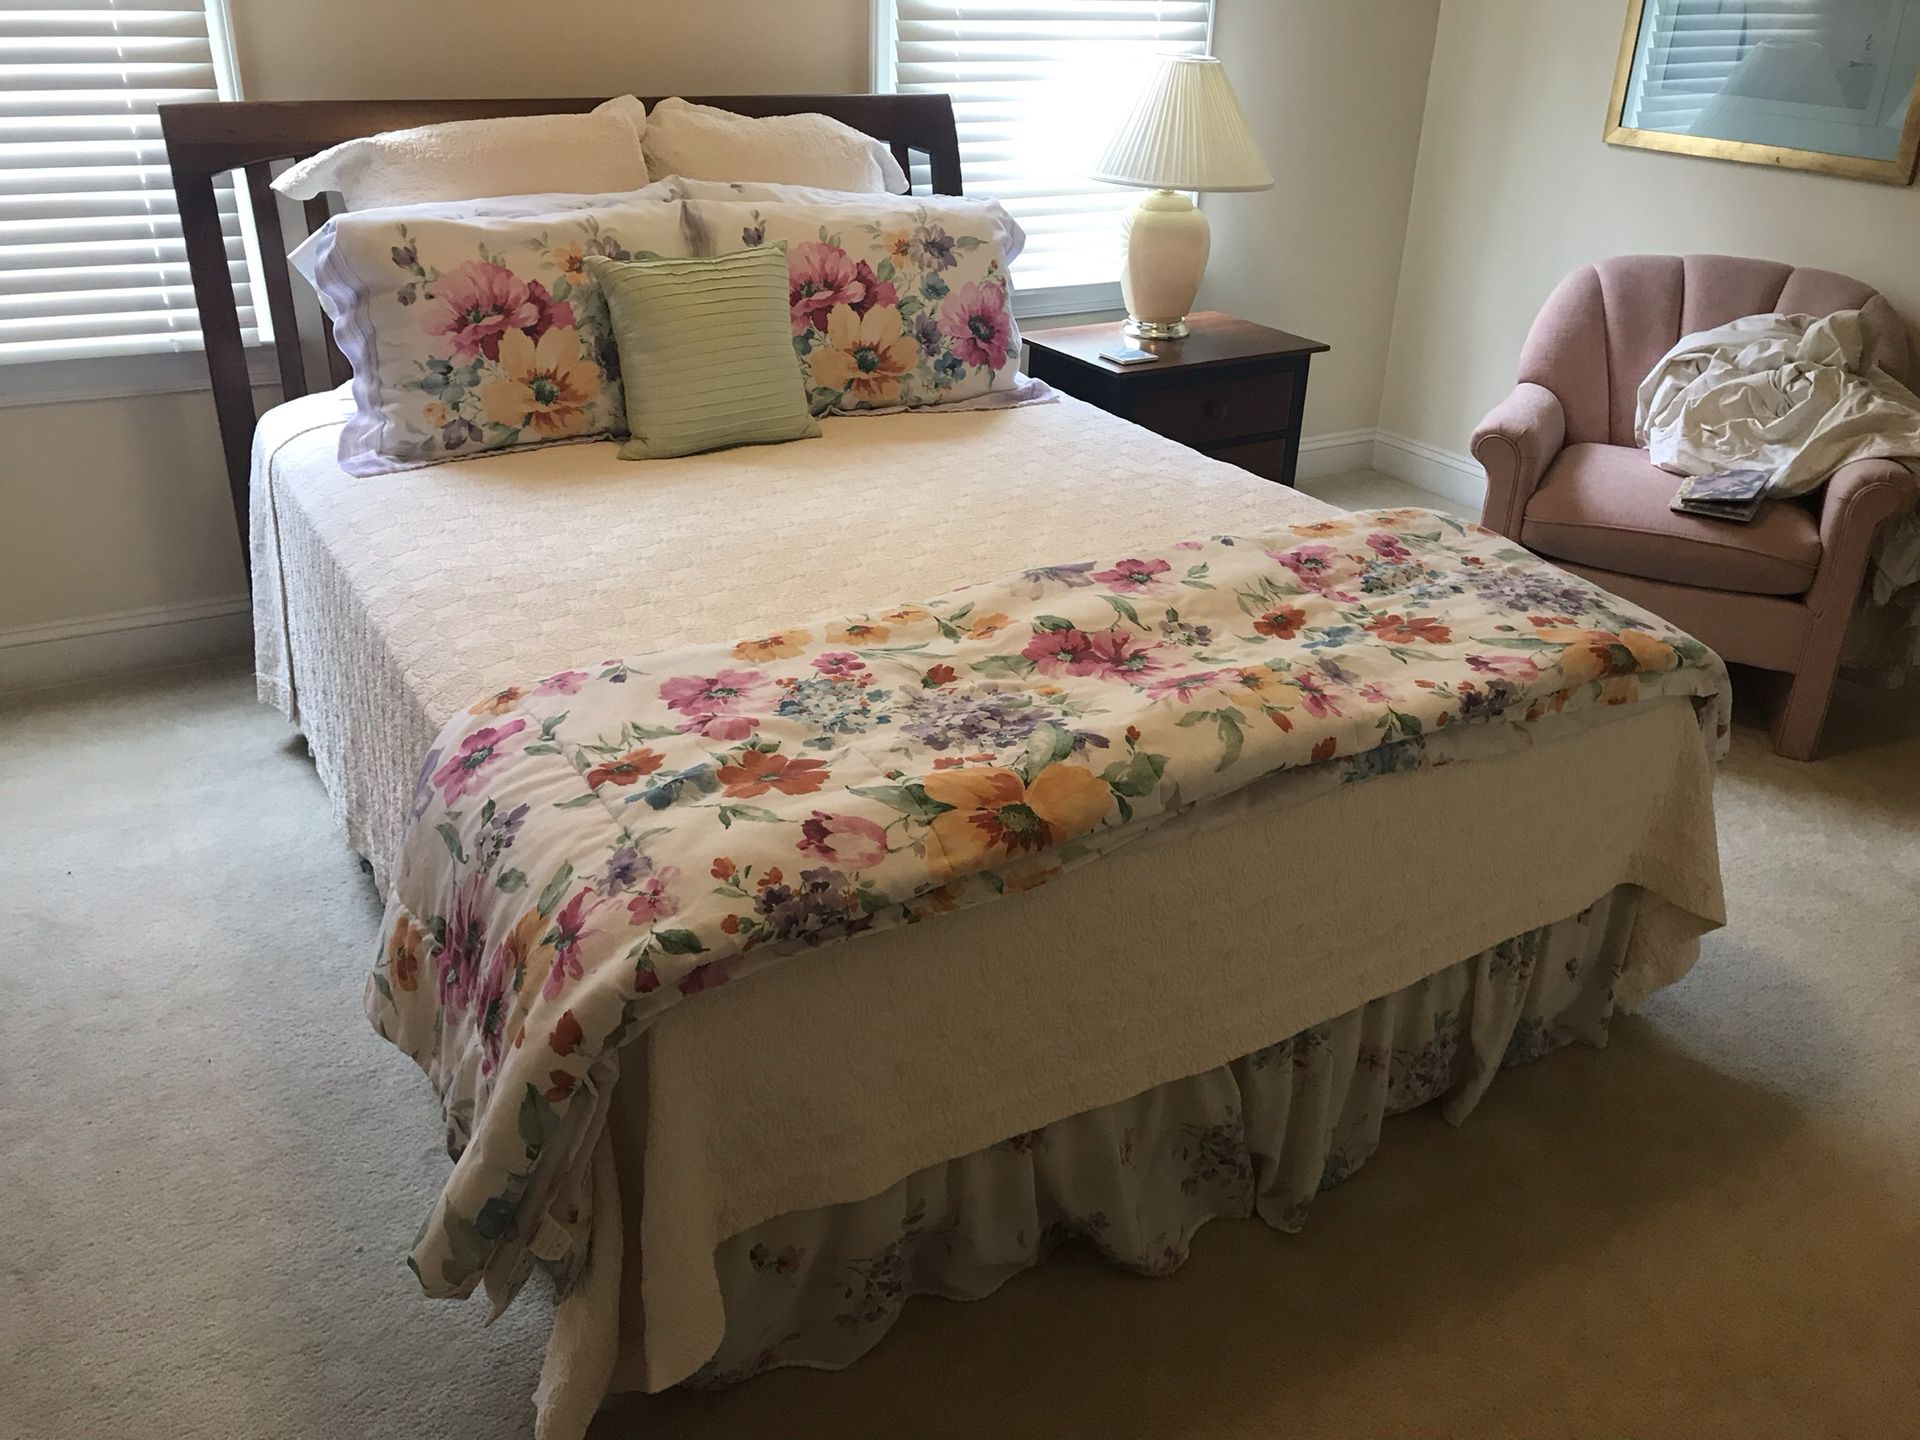 Bedroom suite, Queen size bed, dresser w/mirror and nightstand.